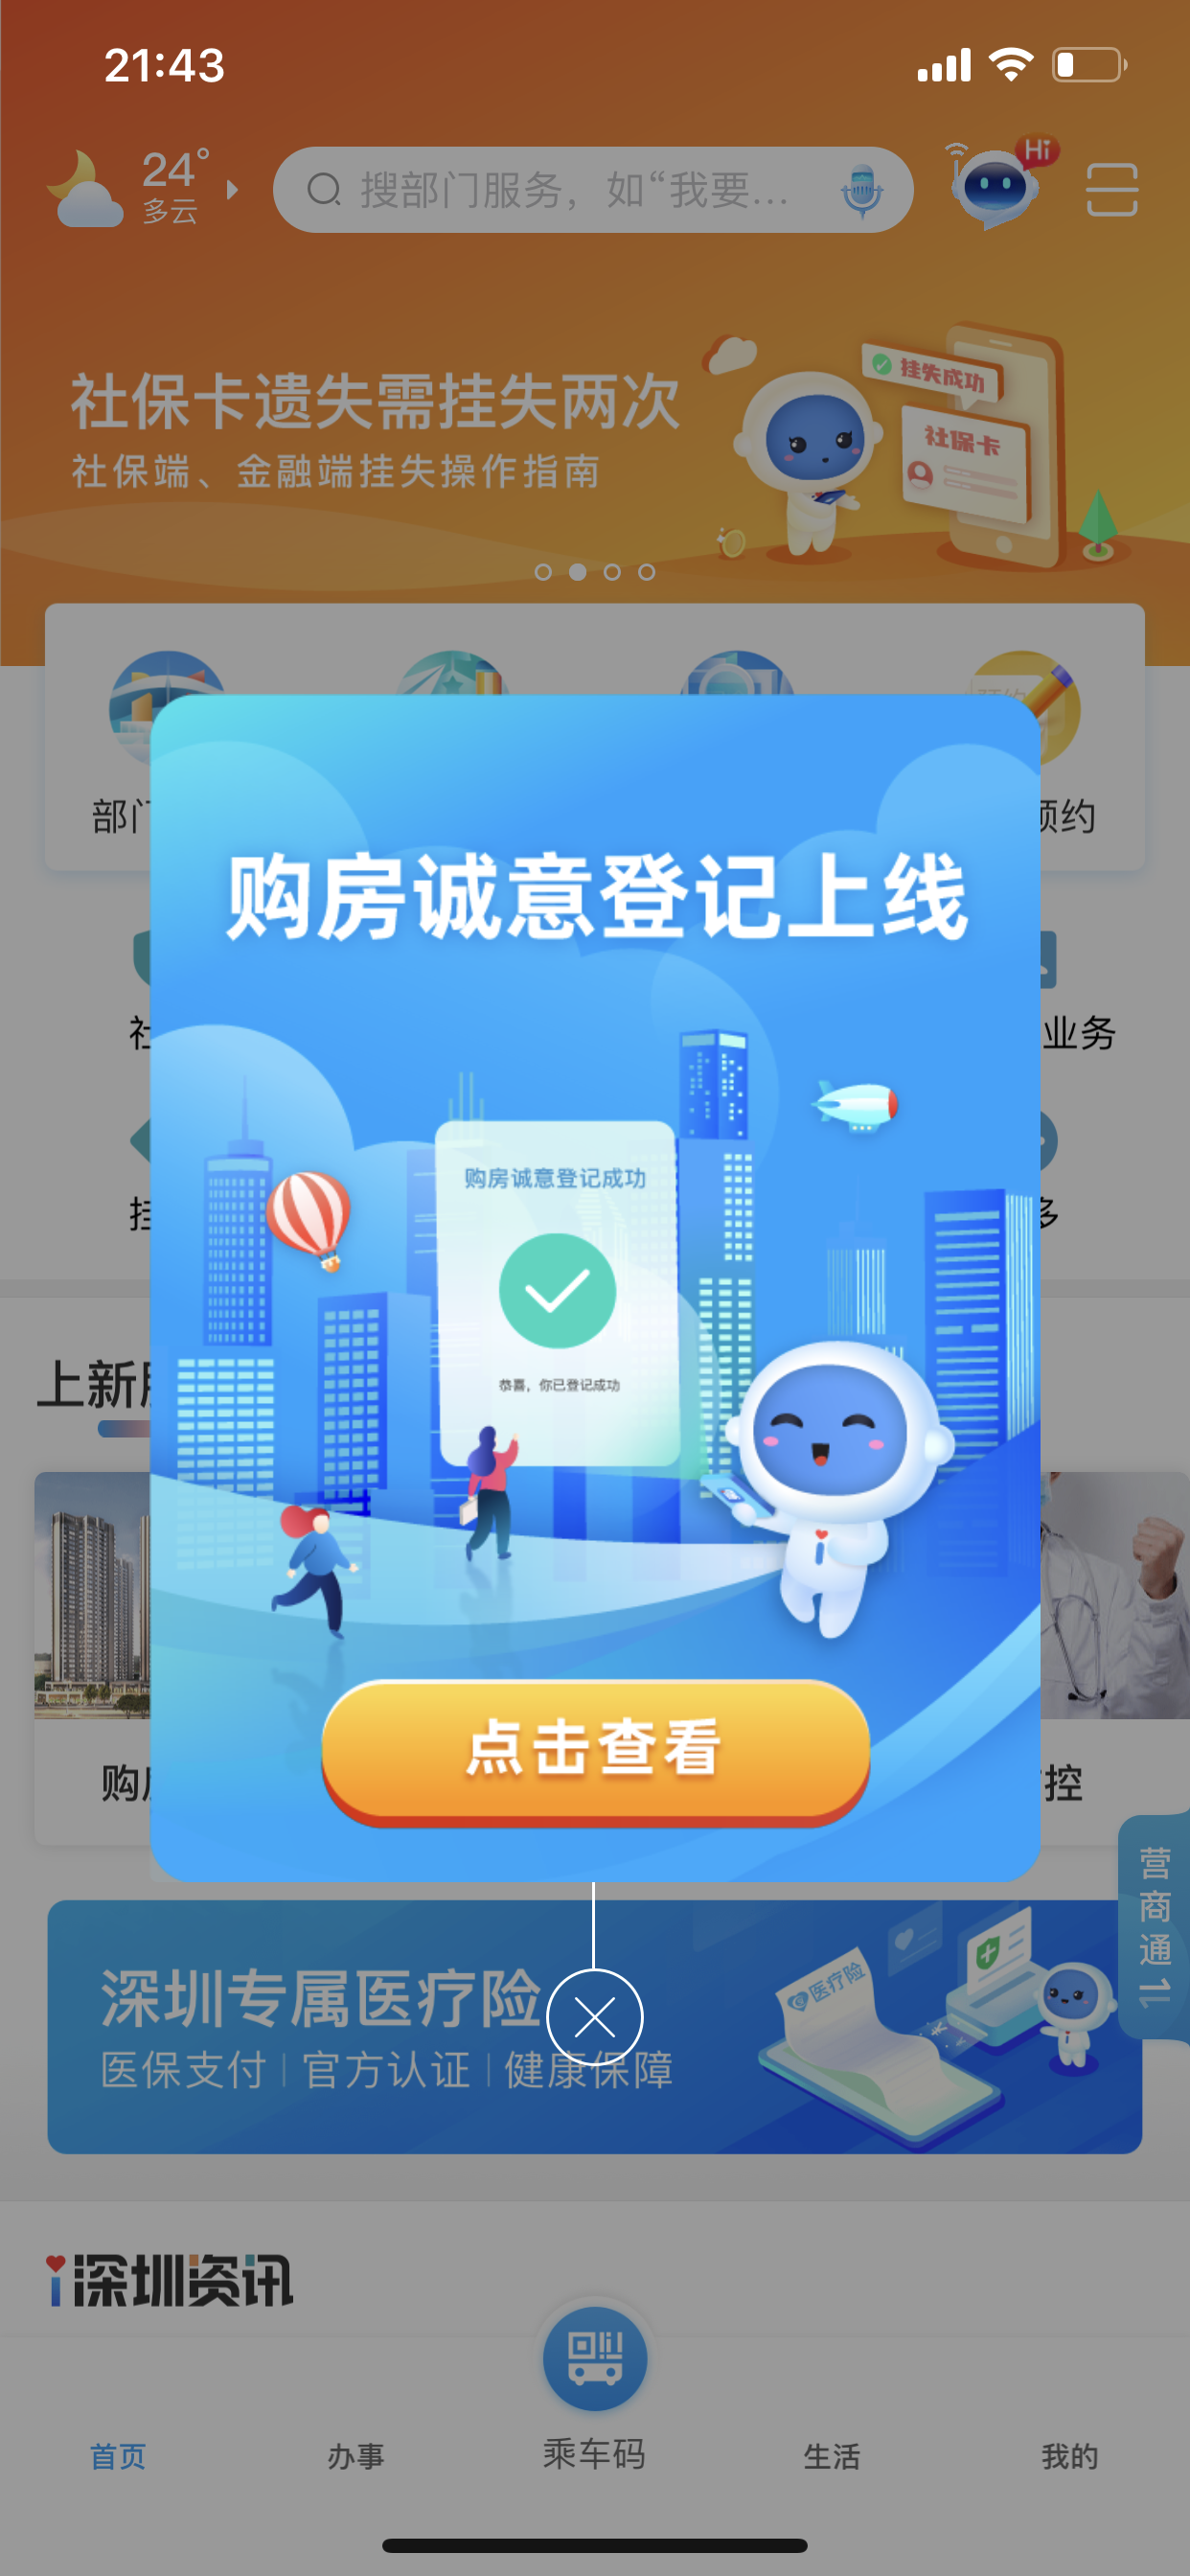 热点楼盘信息不对称 深圳上线官方App所有项目线上认购